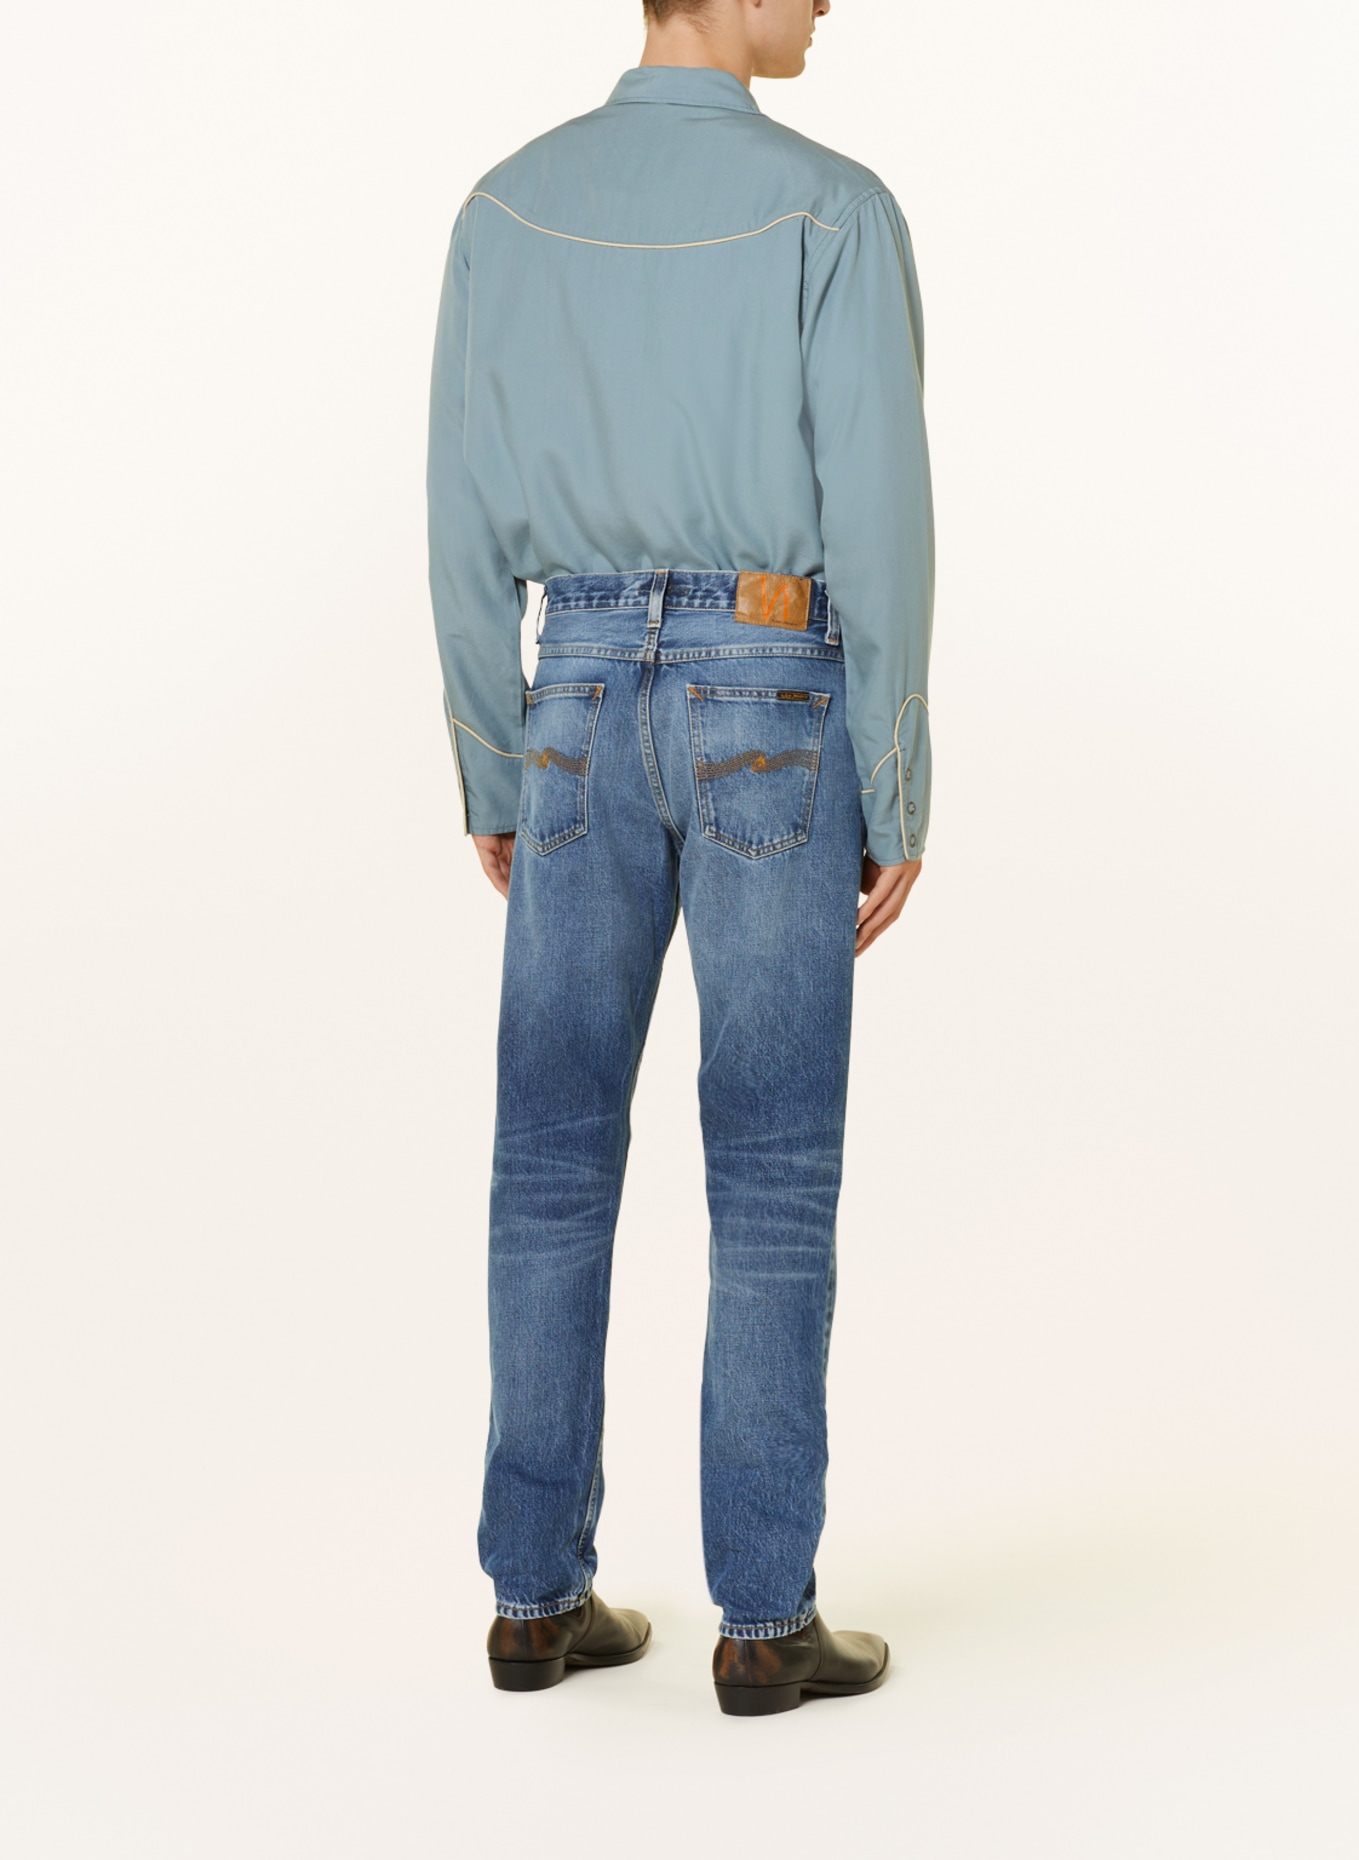 Nudie Jeans Jeans STEADY EDDIE II tapered fit, Color: Blue Tornado (Image 3)